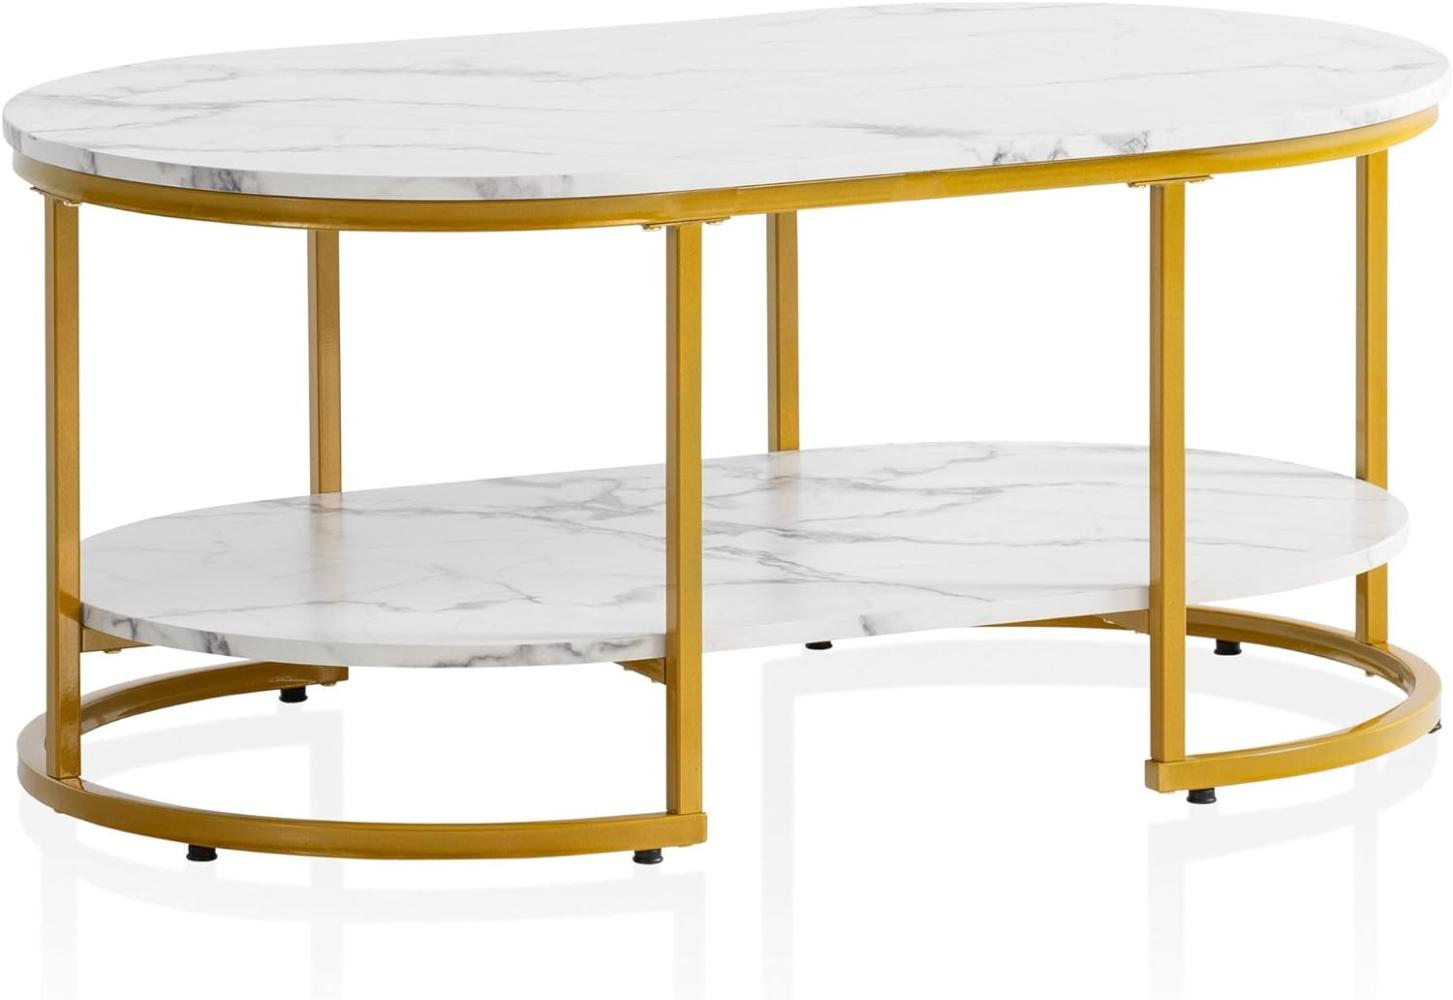 FineBuy Couchtisch 100x60x45 cm Marmor Optik, Design Wohnzimmertisch Rechteckig, Lounge Sofatisch mit Ablage, Kaffeetisch Modern mit goldenem Metallgestell Weiß Bild 1